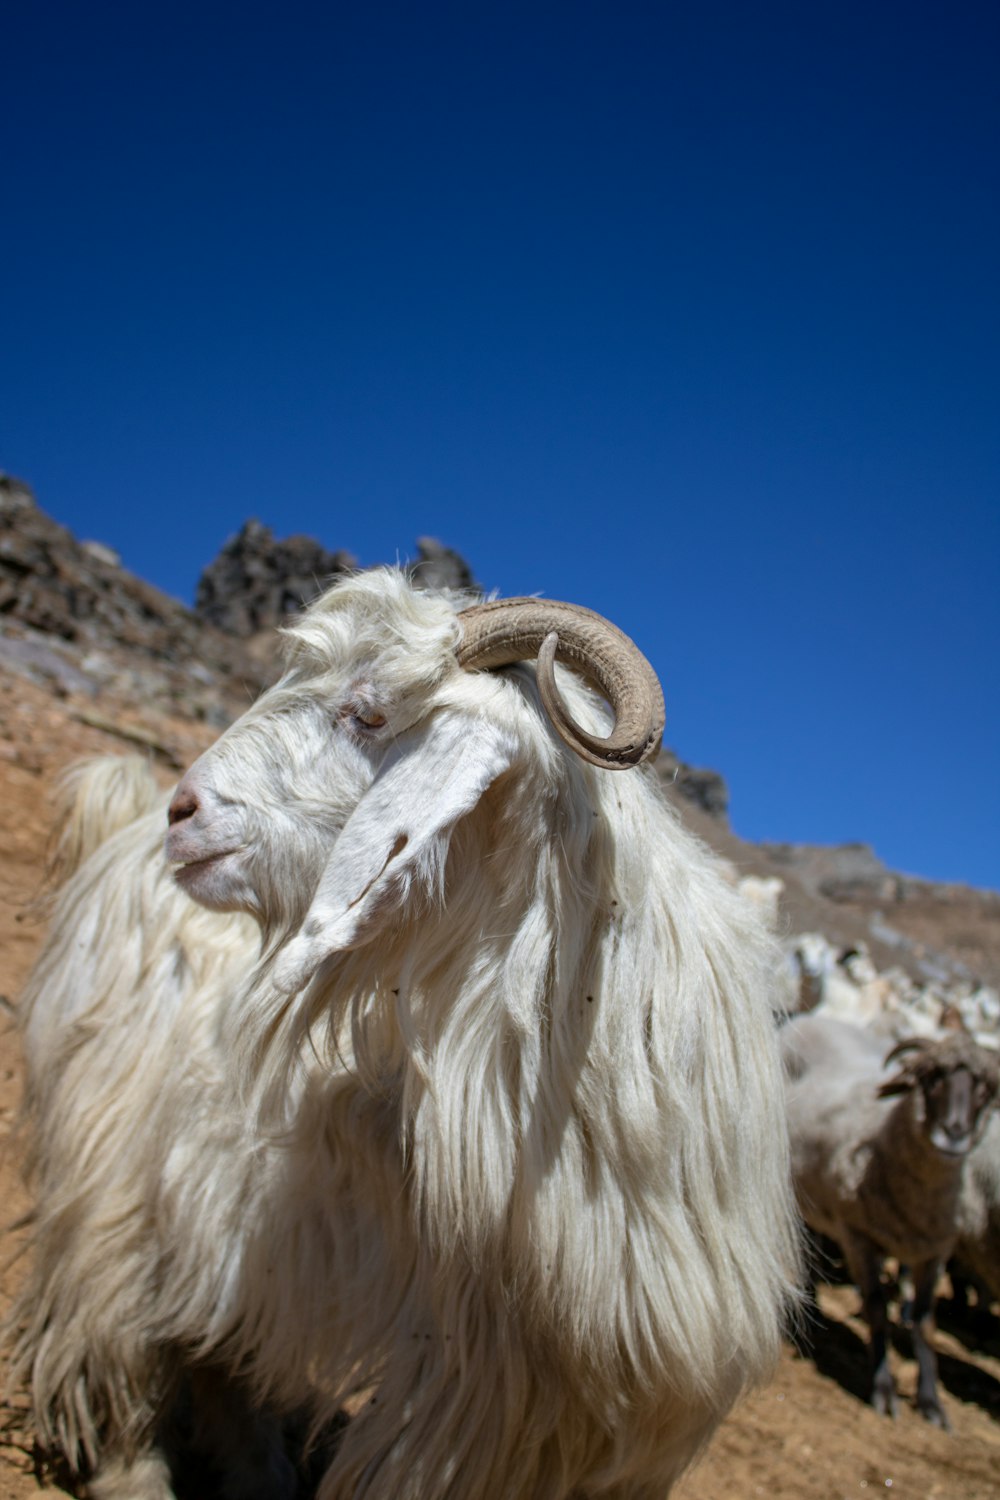 une chèvre blanche avec une longue corne debout dans une zone rocheuse